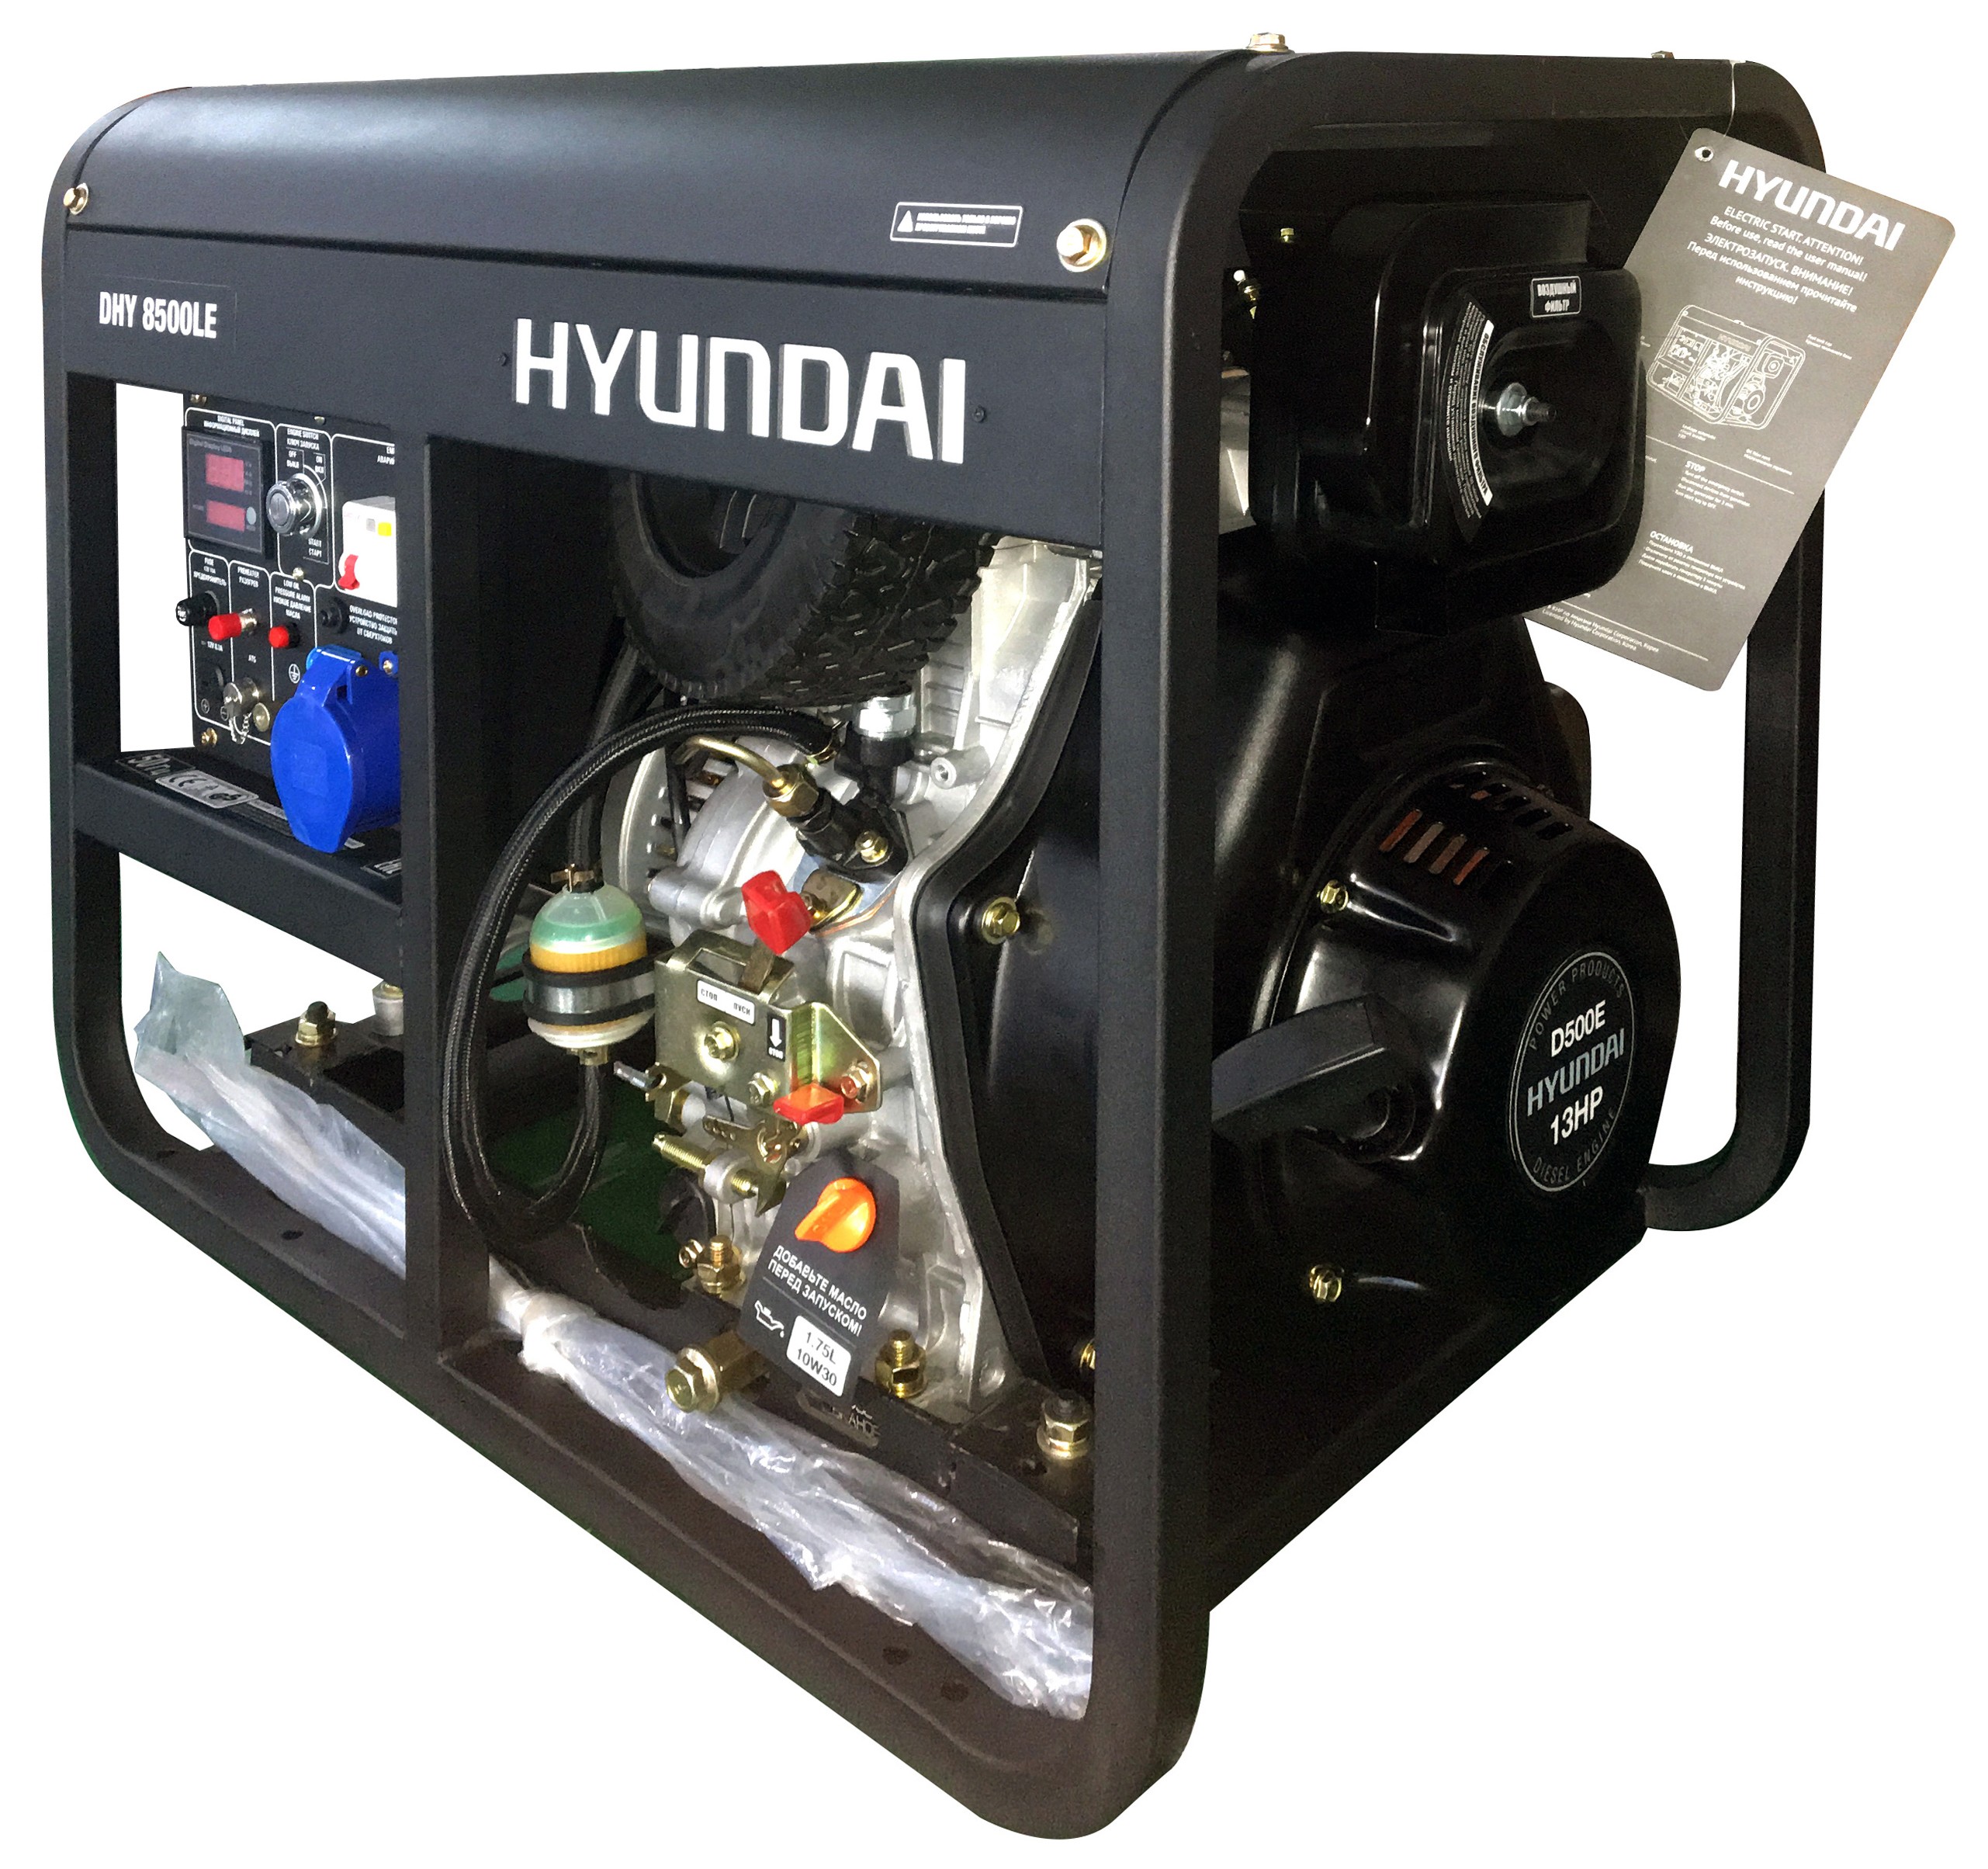 Дизельный генератор Hyundai DHY 8500LE дизельный генератор hyundai dhy 8500 se t